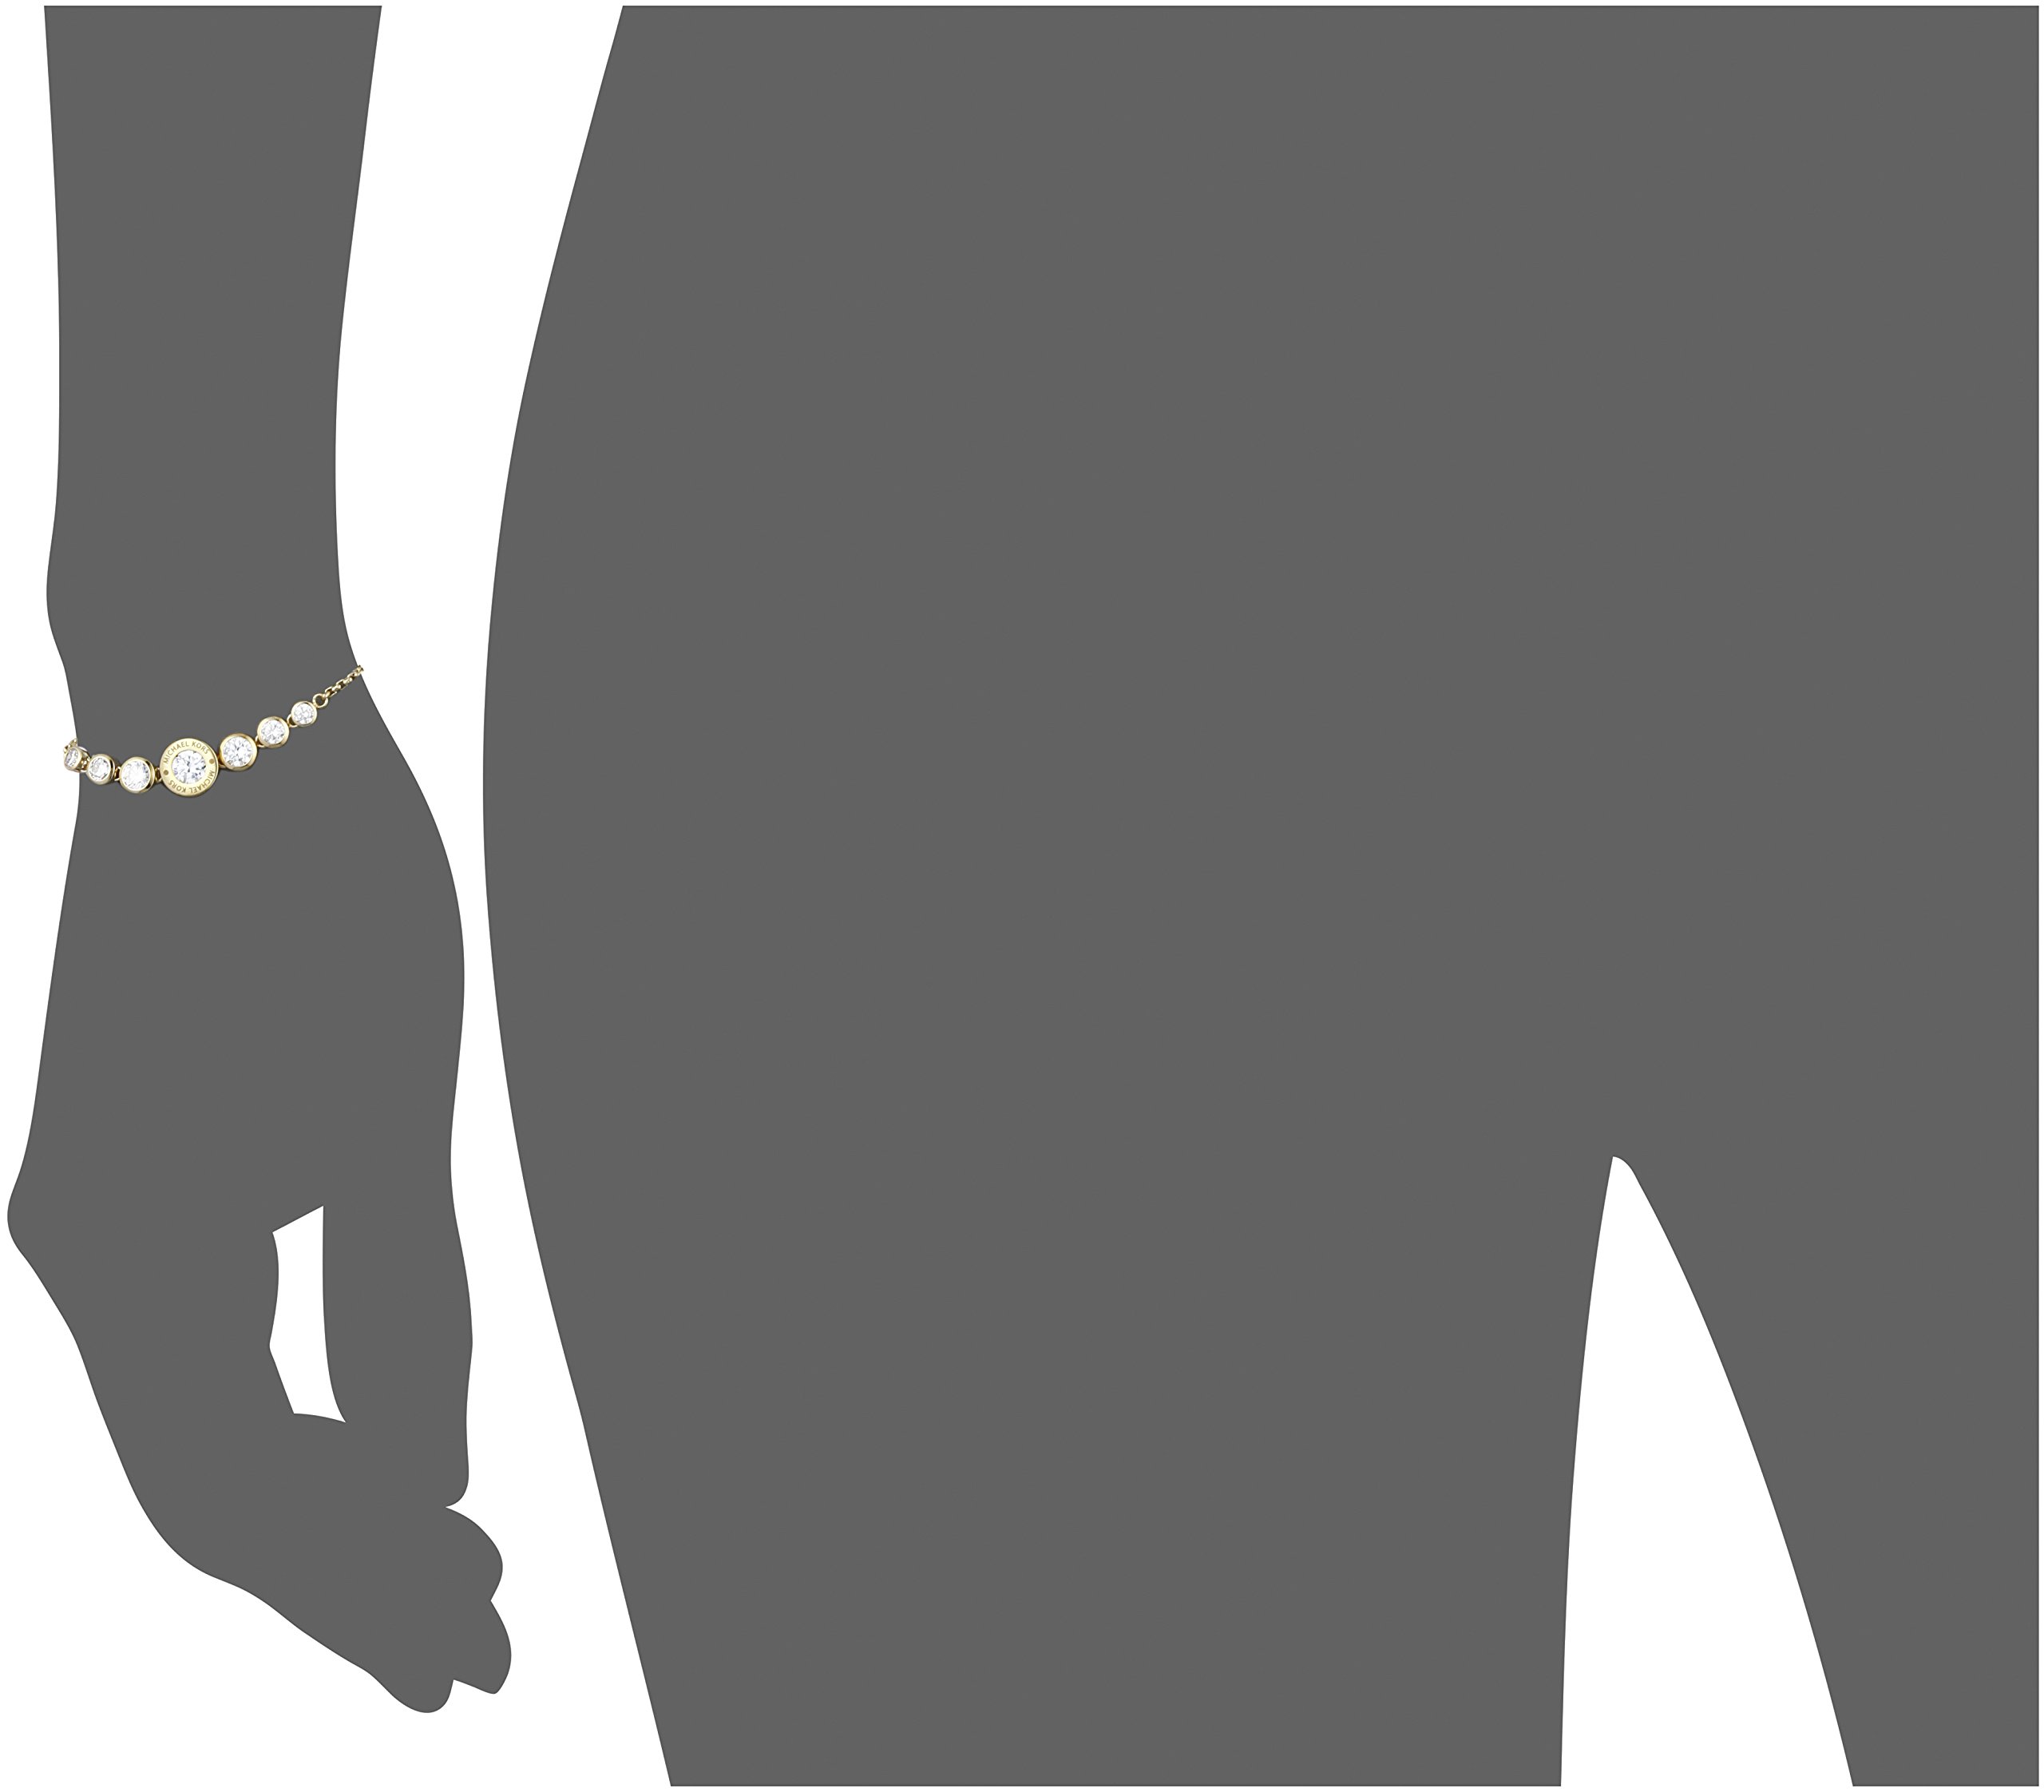 Michael Kors Women's Logo Gold-Tone Stainless Steel and Crystal Slider Bracelet (Model: MKJ5334710)